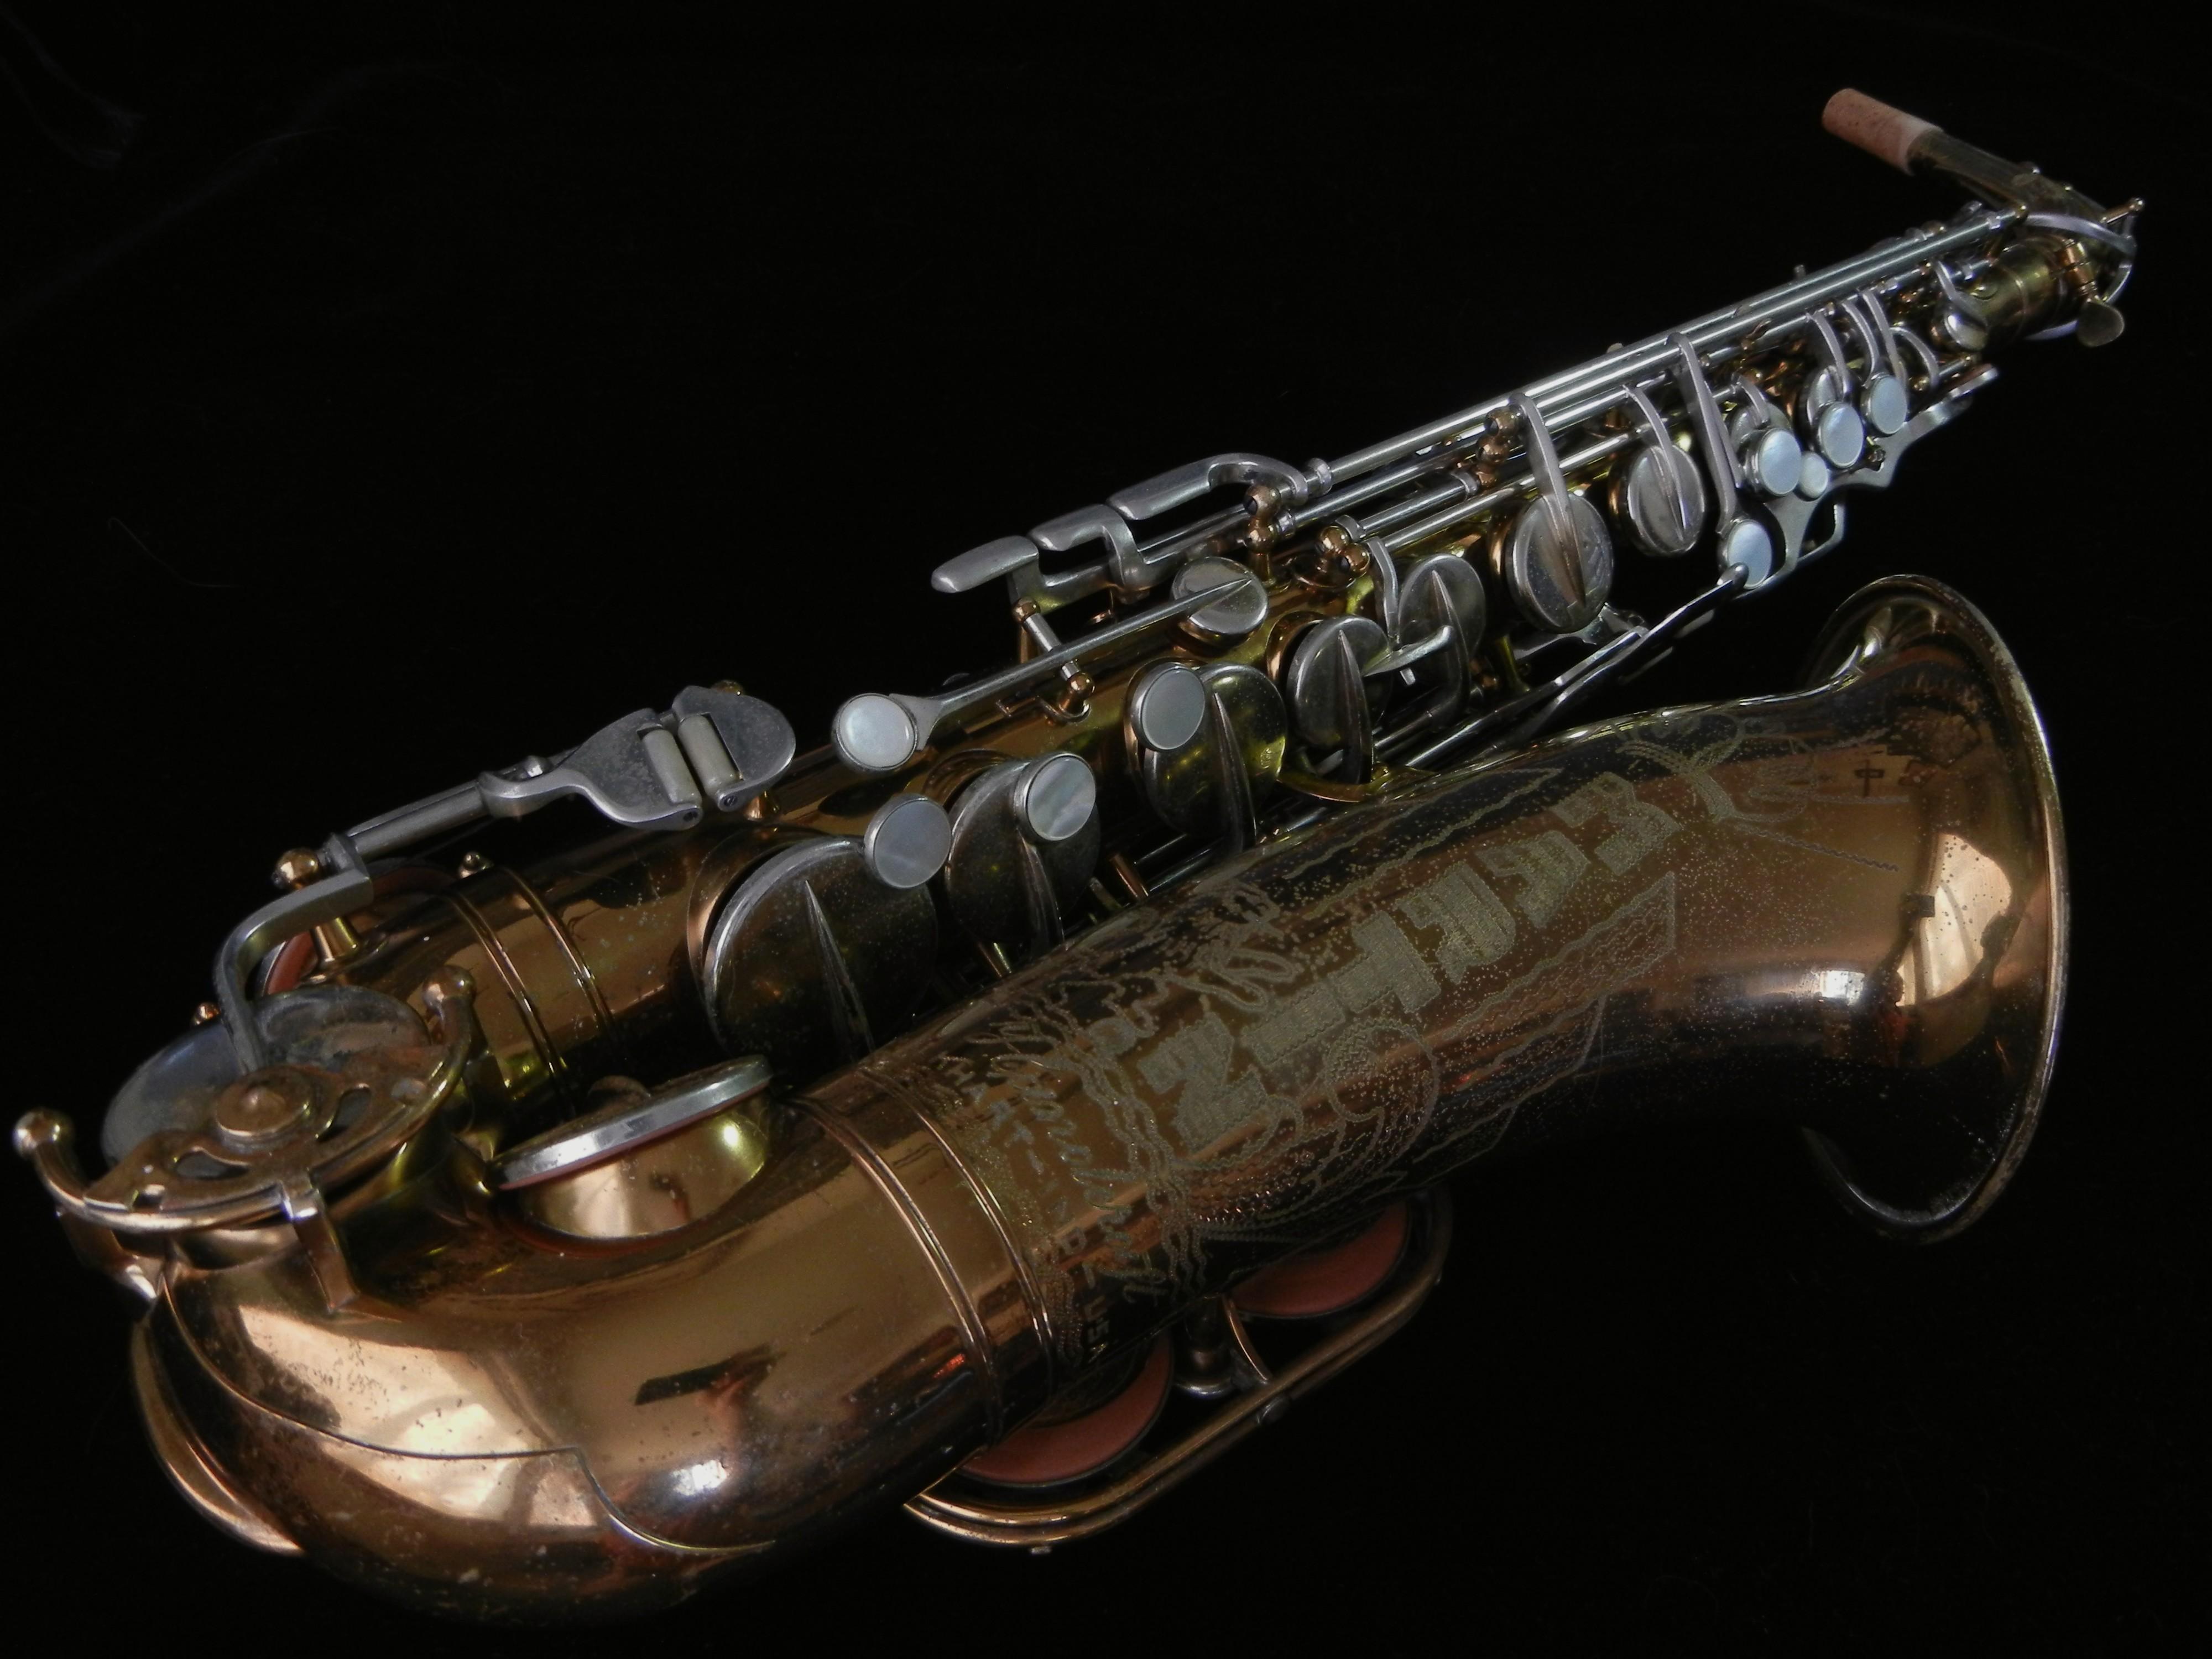 Saxophone Wallpaper HD